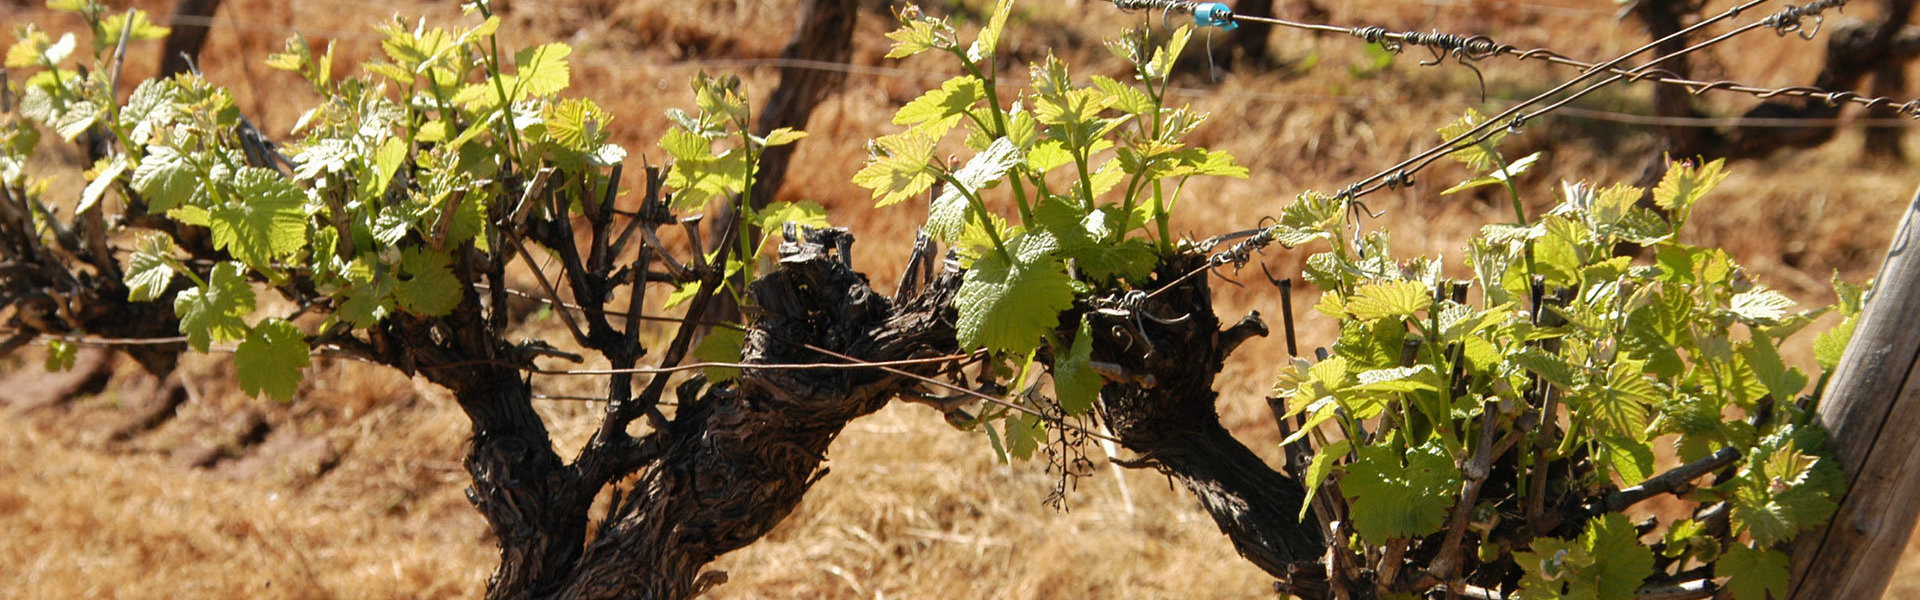 Découvrez le Domaine Malavieille et le Mas de Bertrand, producteurs de vin reconnus dans l'Hérault (34)